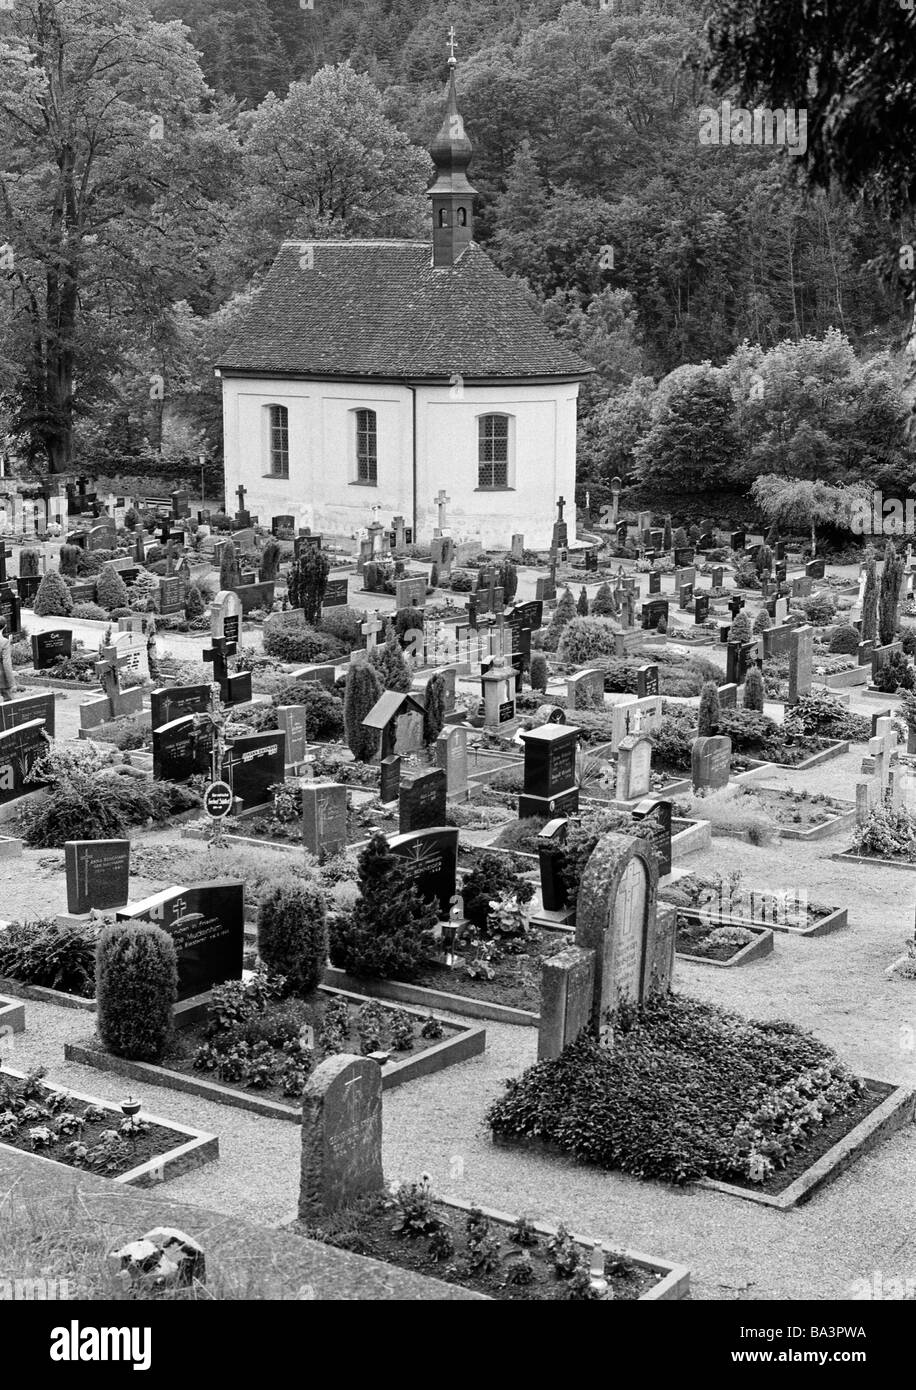 Achtziger Jahre, schwarz / weiß Foto, Menschen, Tod, Trauer, Friedhof, Gräber, Grabsteine, Kapelle, Schwarzwald, Baden-Württemberg Stockfoto